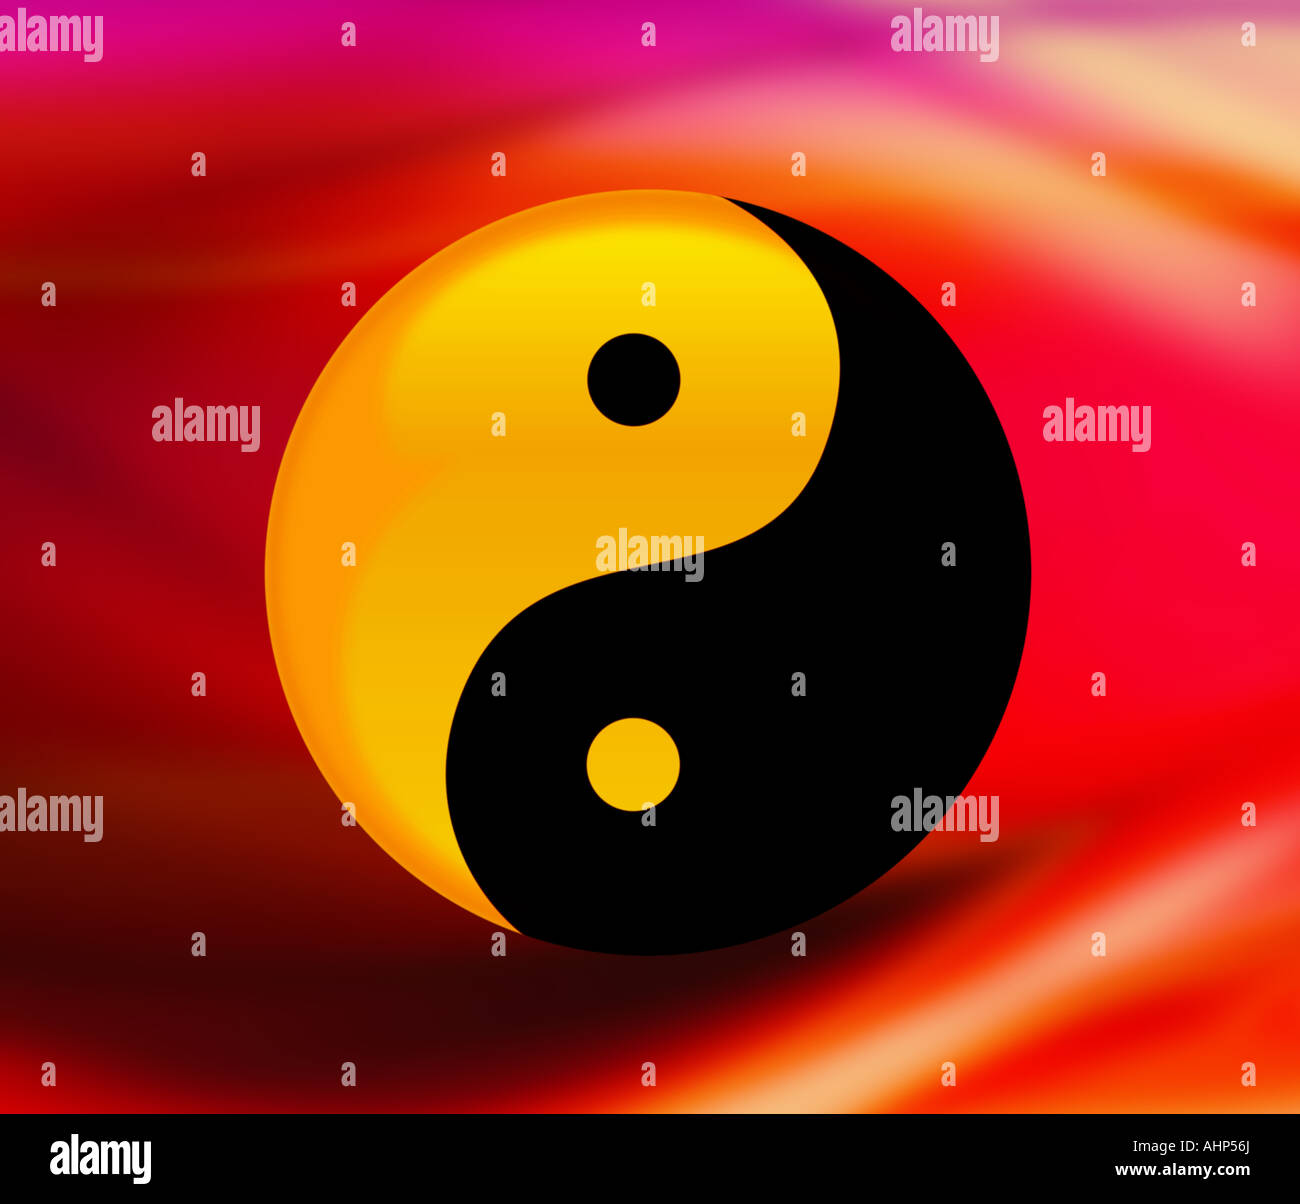 Ying and Yang symbol Stock Photo